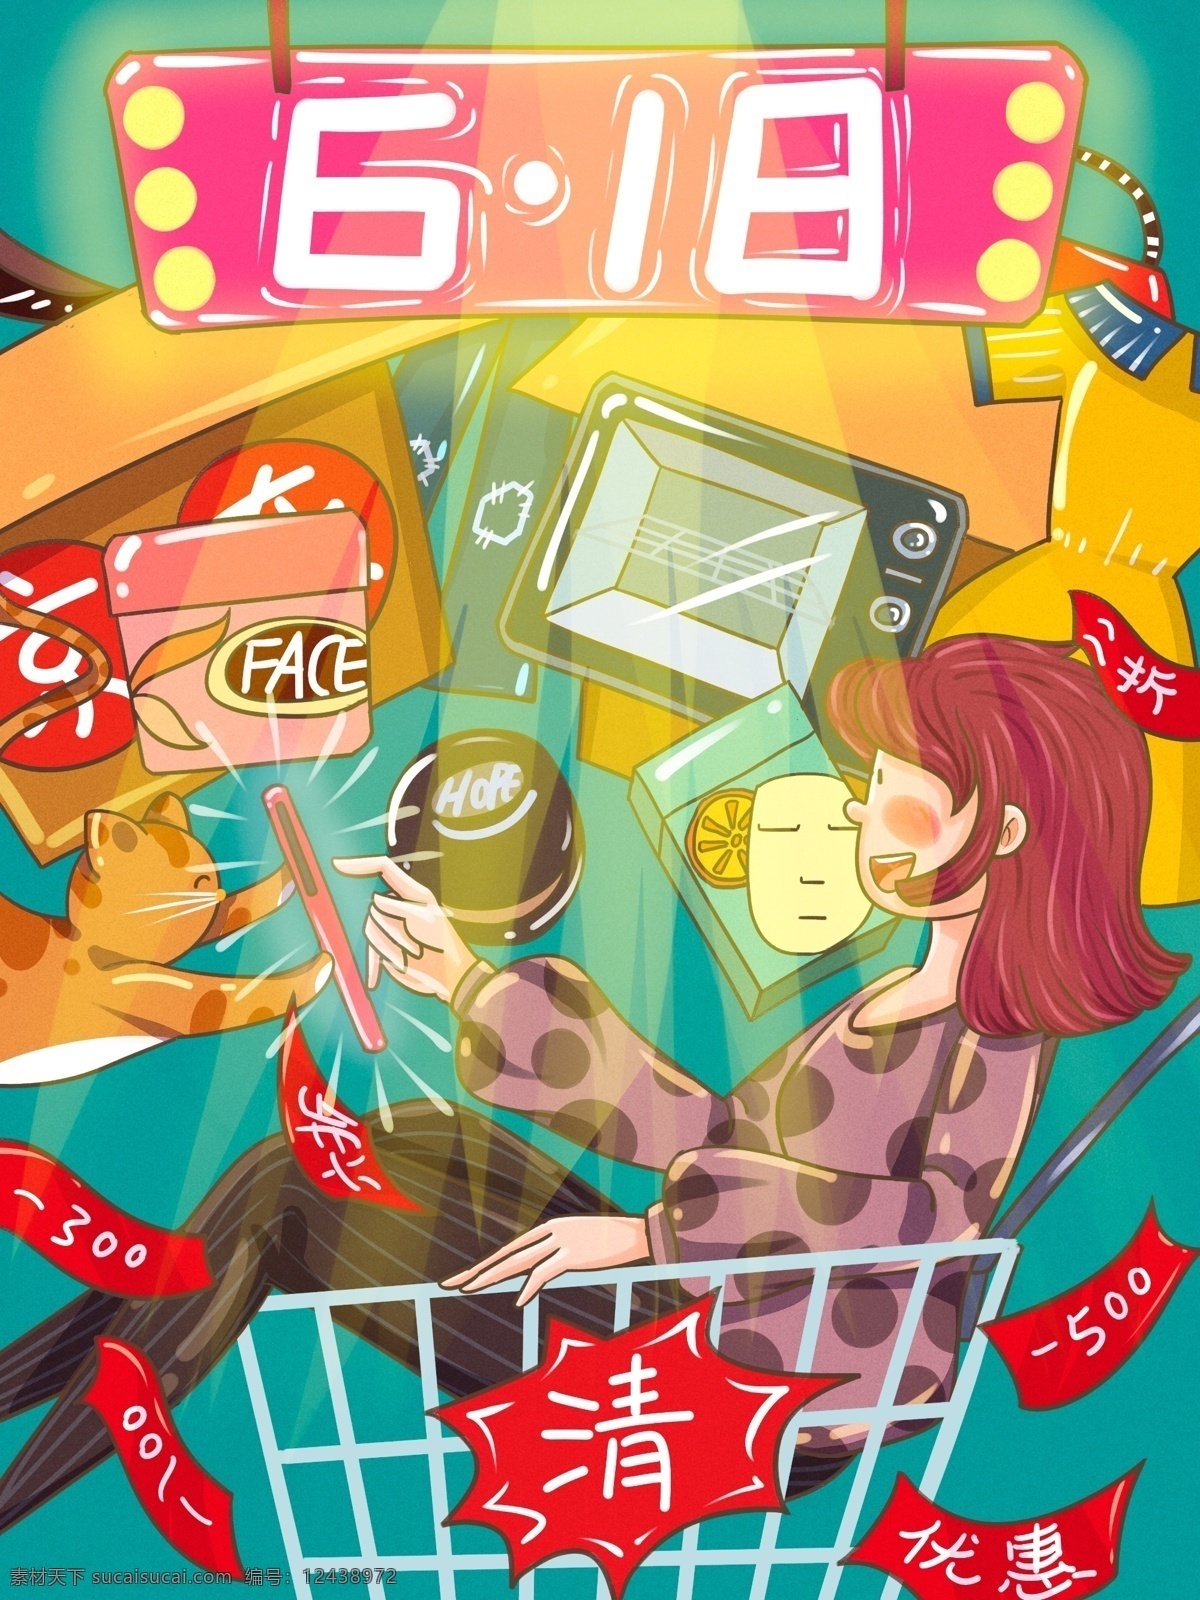 京东 618 电商 季 清空 购物车 大行 动 卡通 插画 电商季 手机 文案 化妆品 货物箱 描边